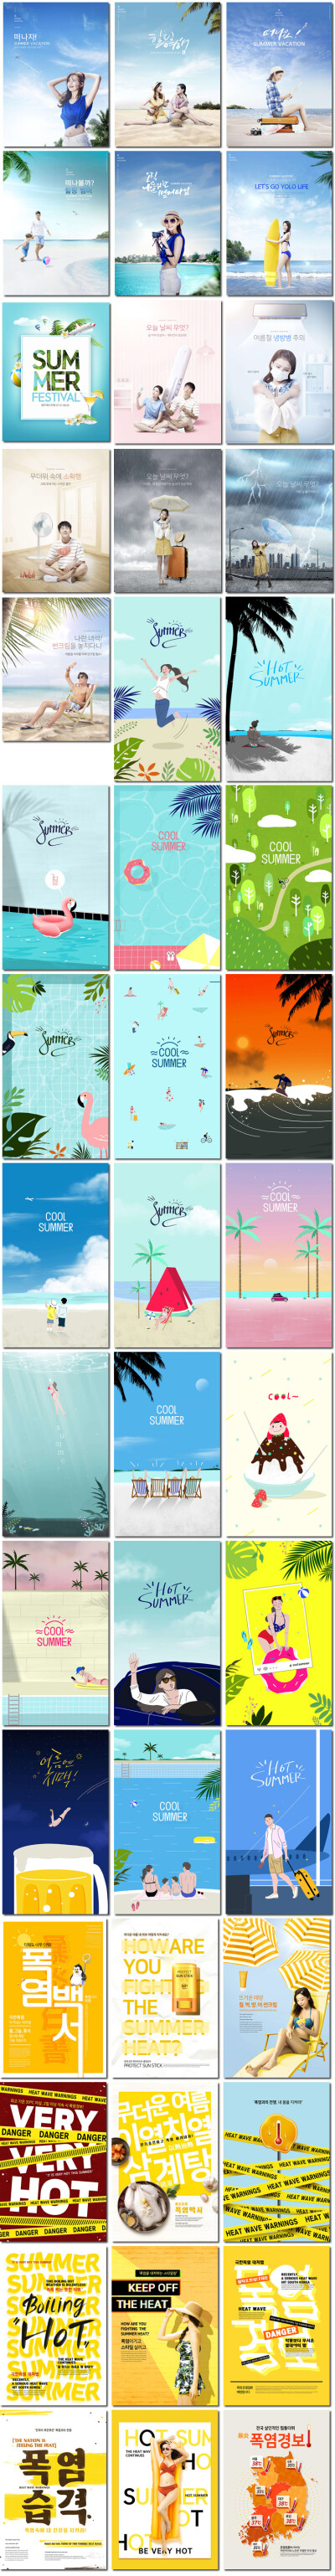 夏季旅游海边沙滩高温台风感冒预警电商广告PSD海报设计素材模板